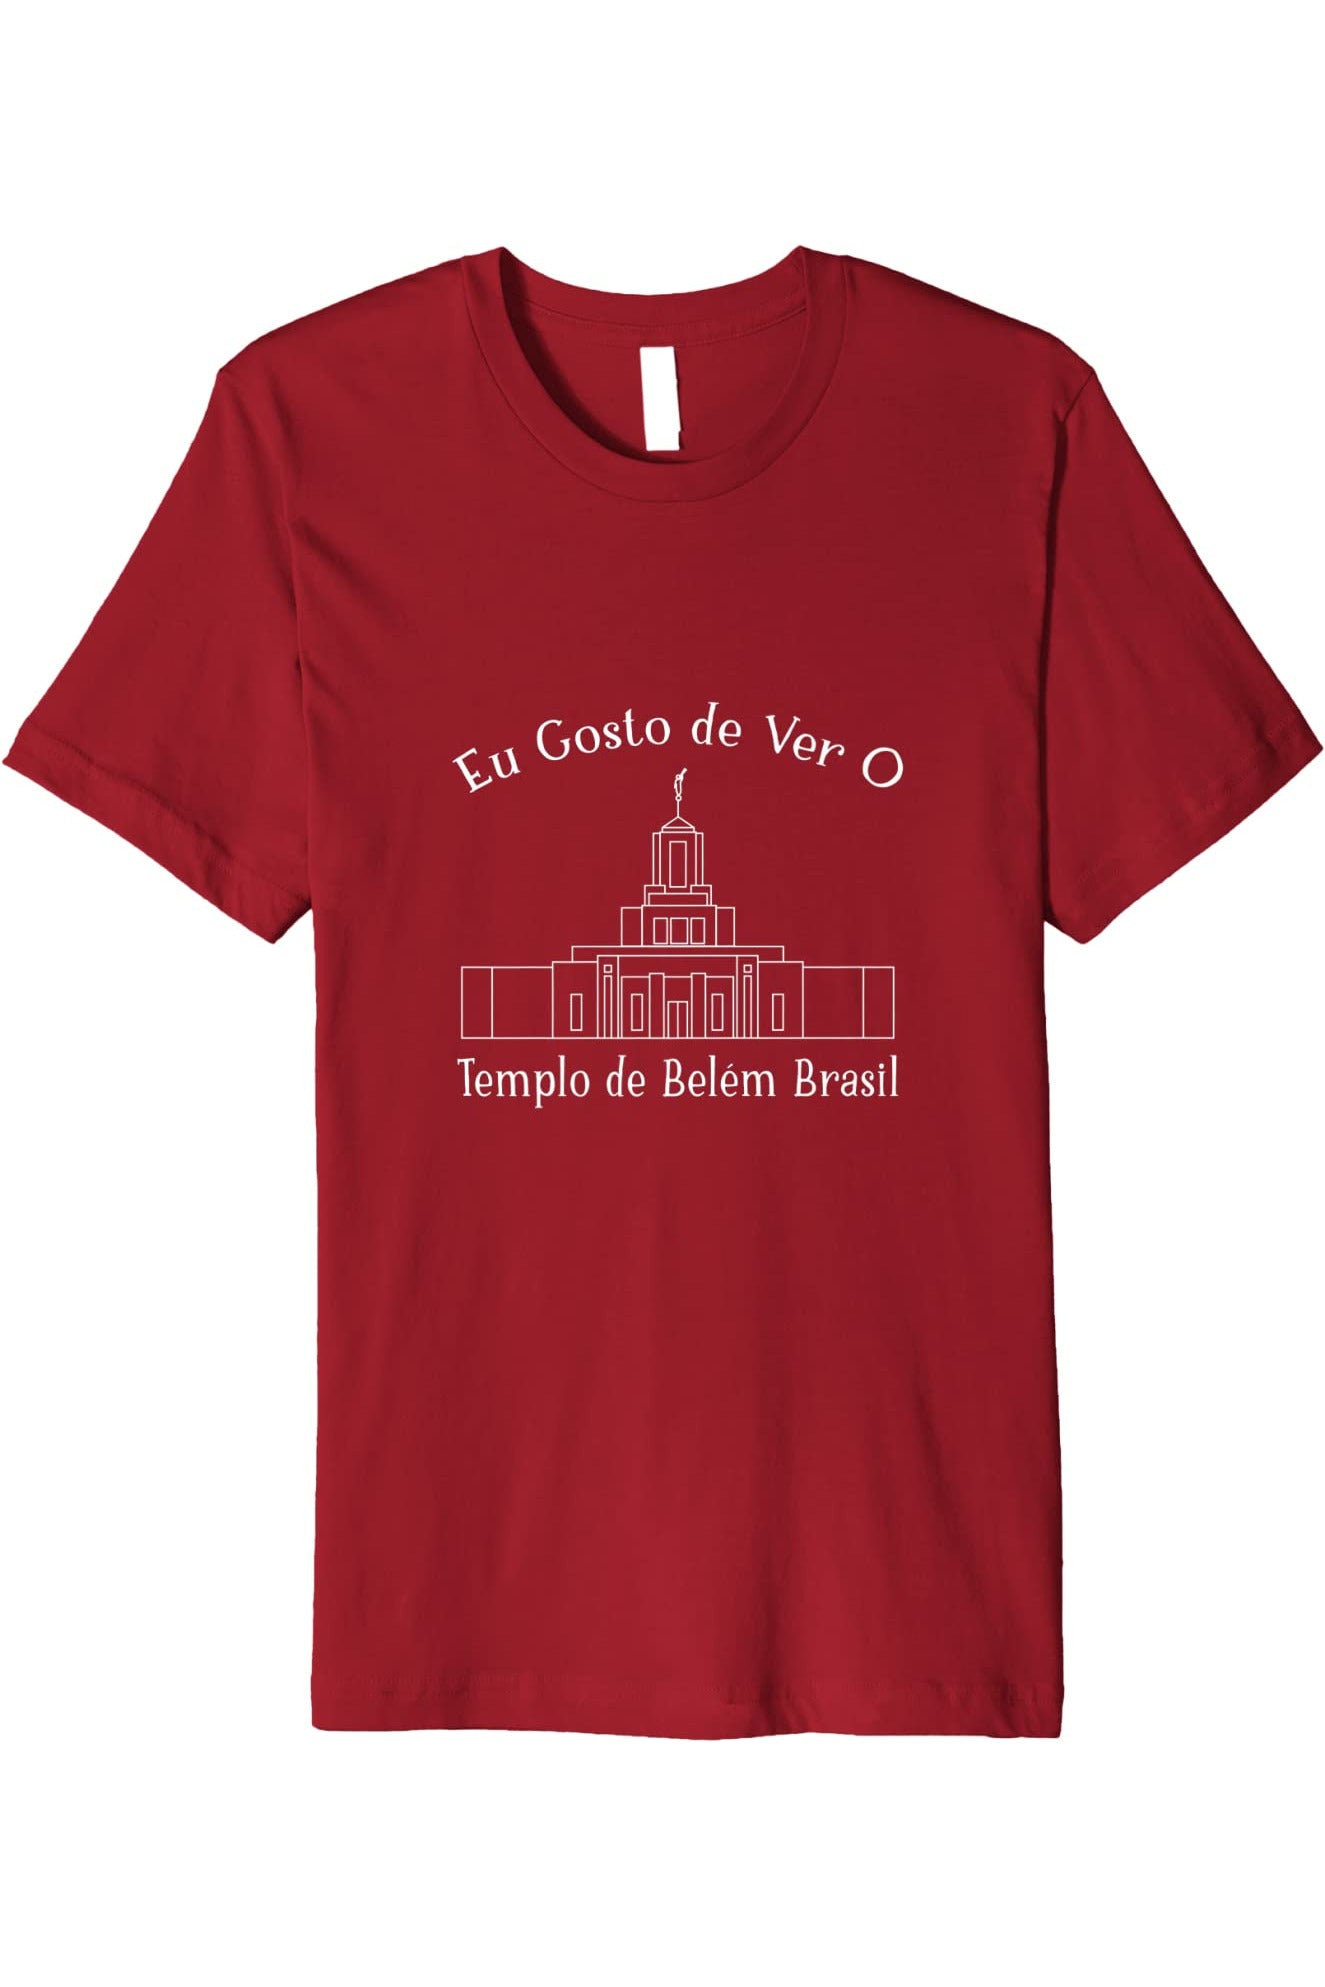 Belem Brazil Temple T-Shirt - Premium - Happy Style (Portuguese) US